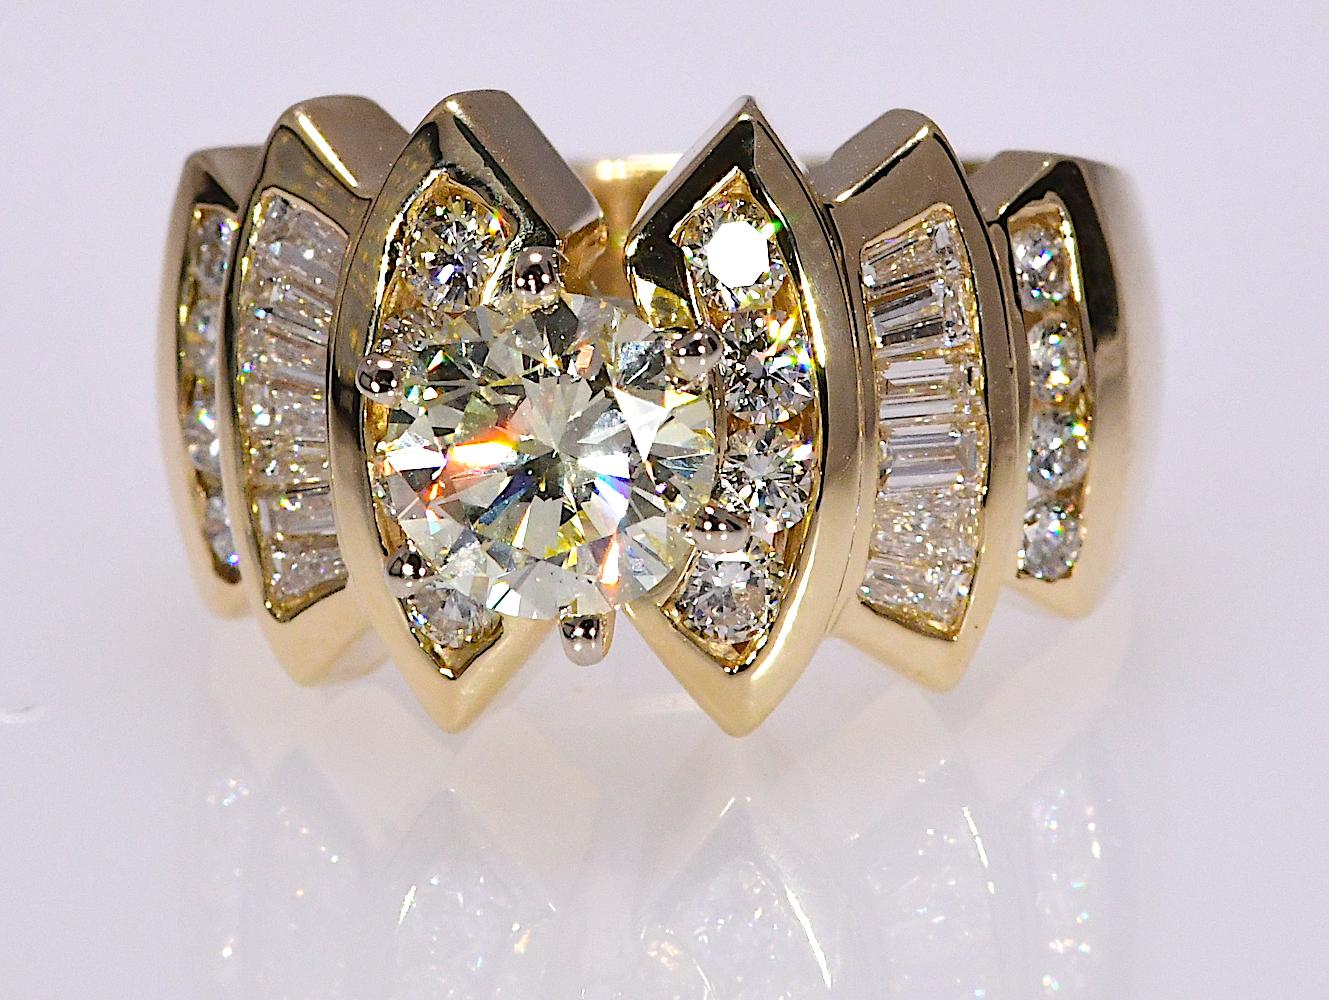 Round Cut 1.33 Carat Center 2.37 Carat Natural Diamond Ring in Yellow Gold 14 Karat